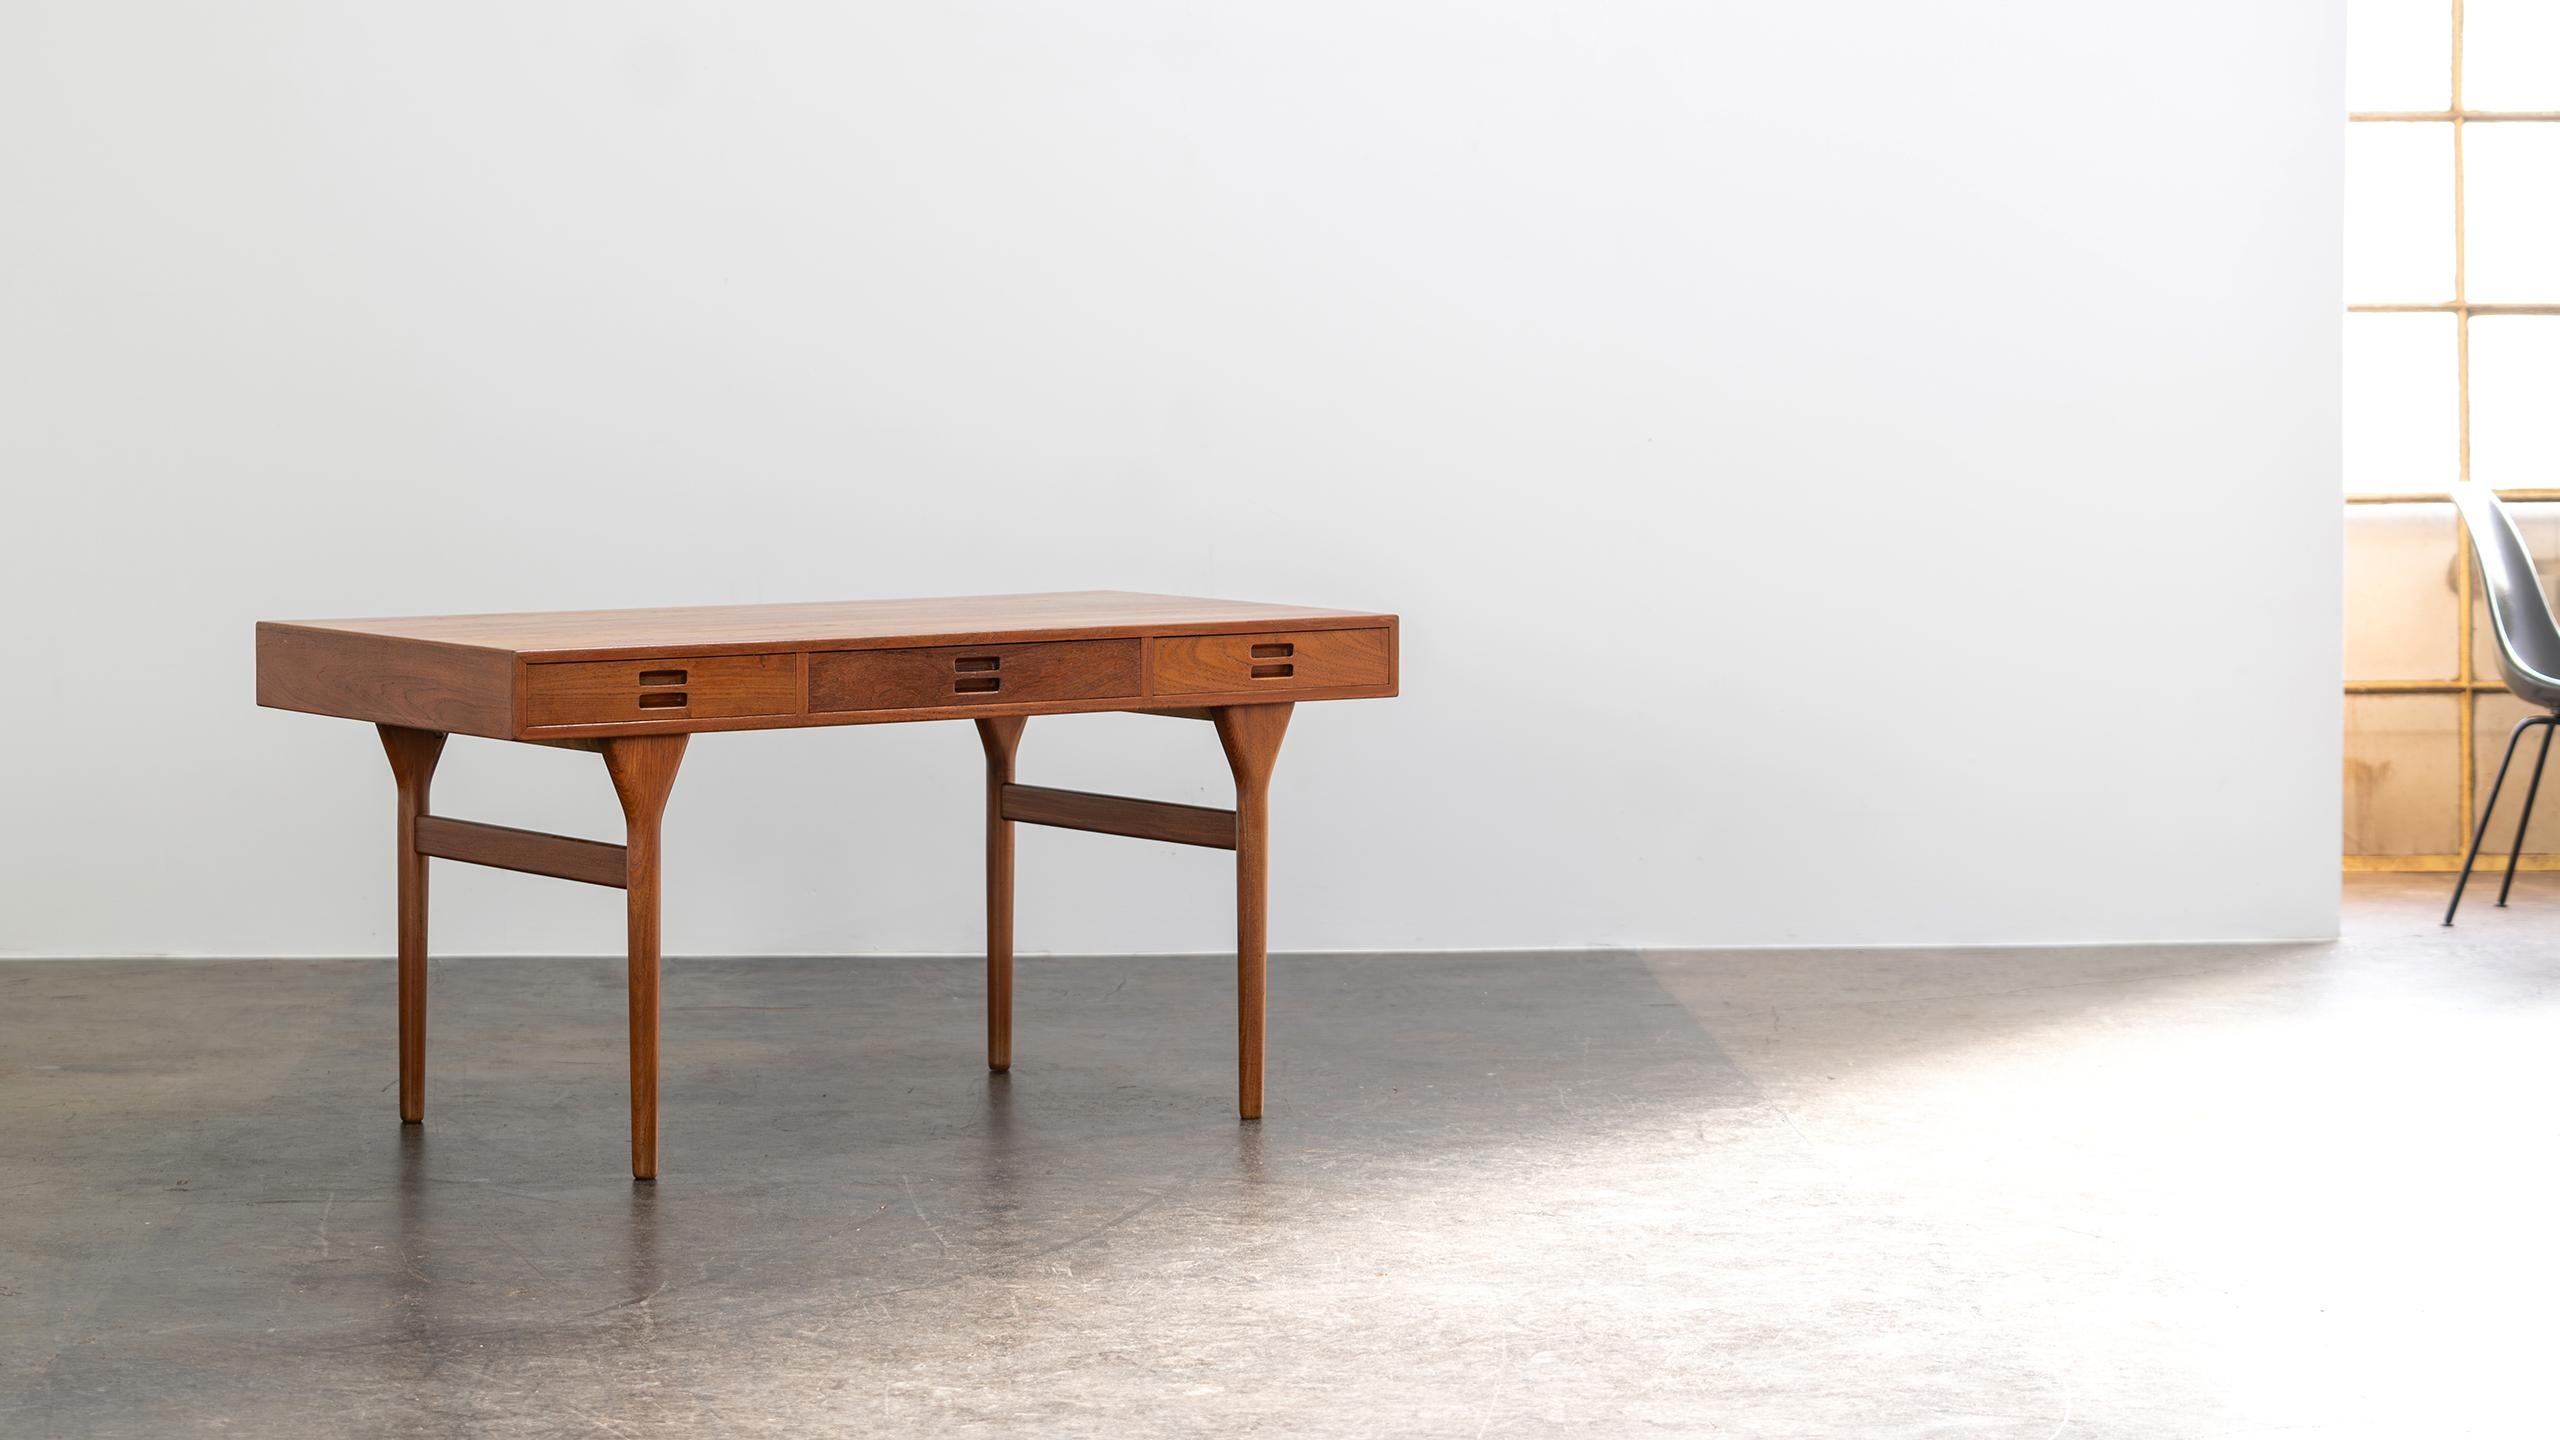 Nanna Ditzel Table Desk in Teak Søren Willadsen 1958 Denmark Mid Century Modern For Sale 1